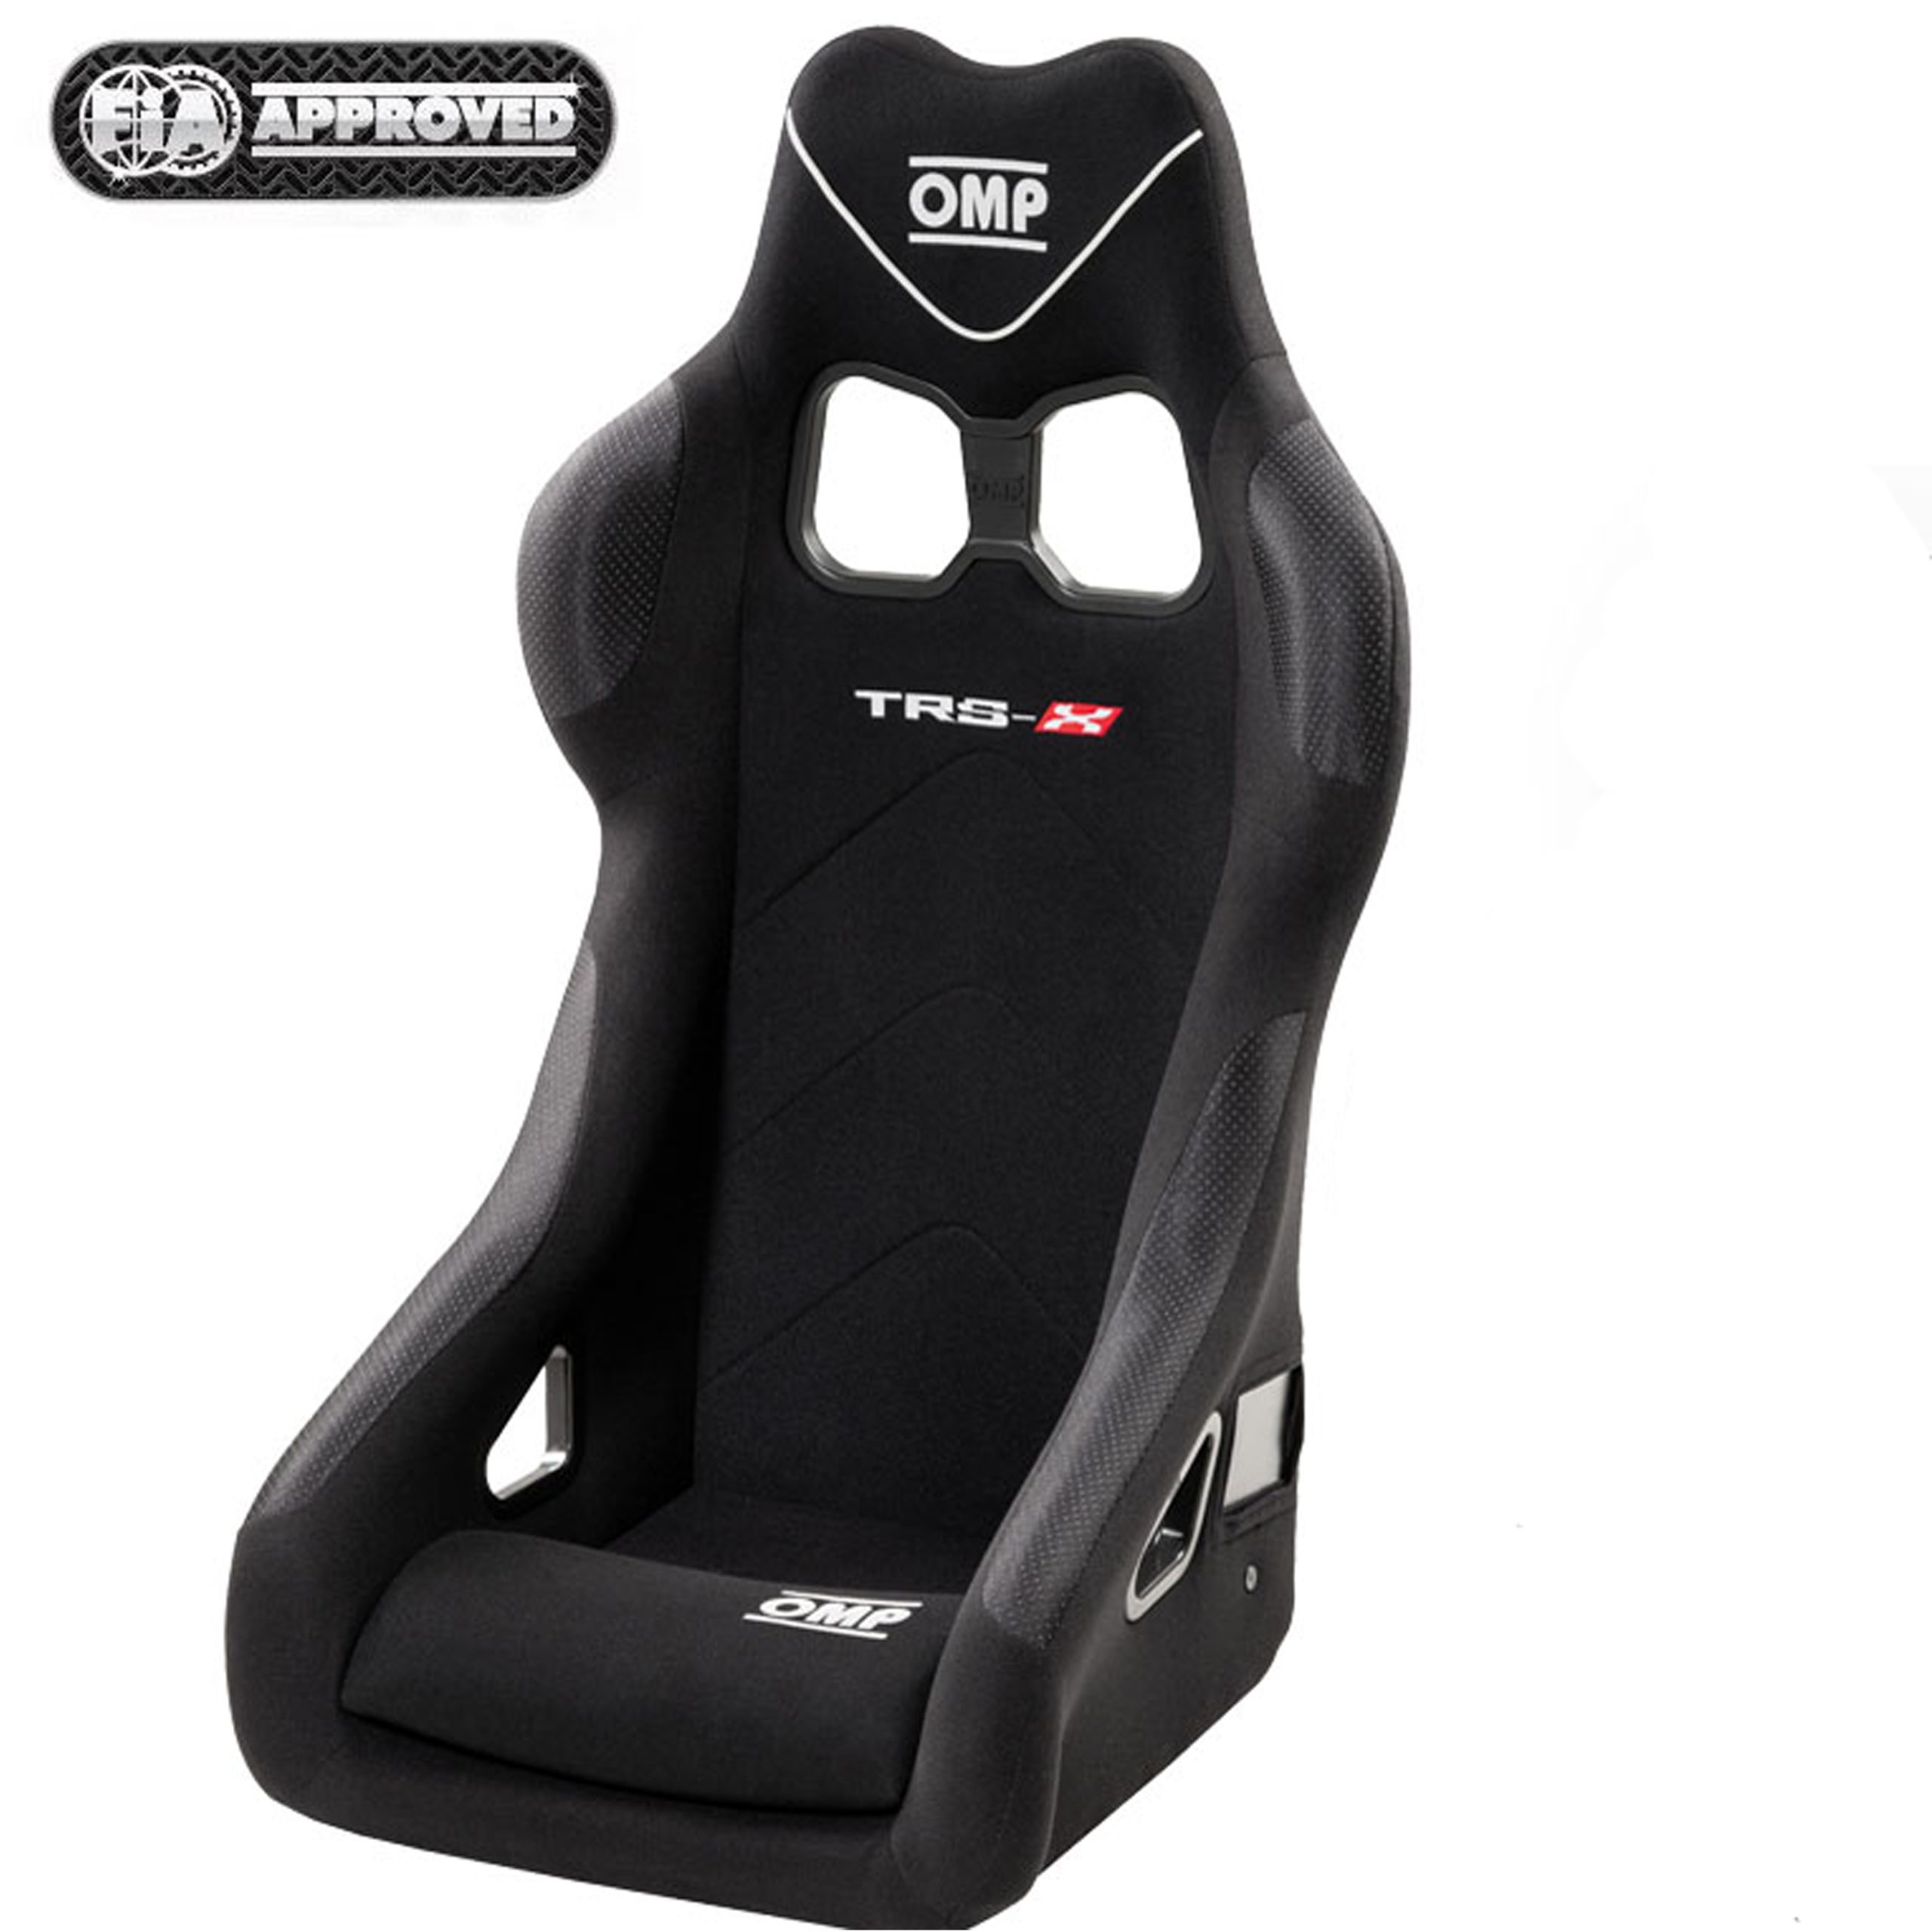 Racing stoel TRS-X, FIA gekeurd, ook voor playstation, x wii